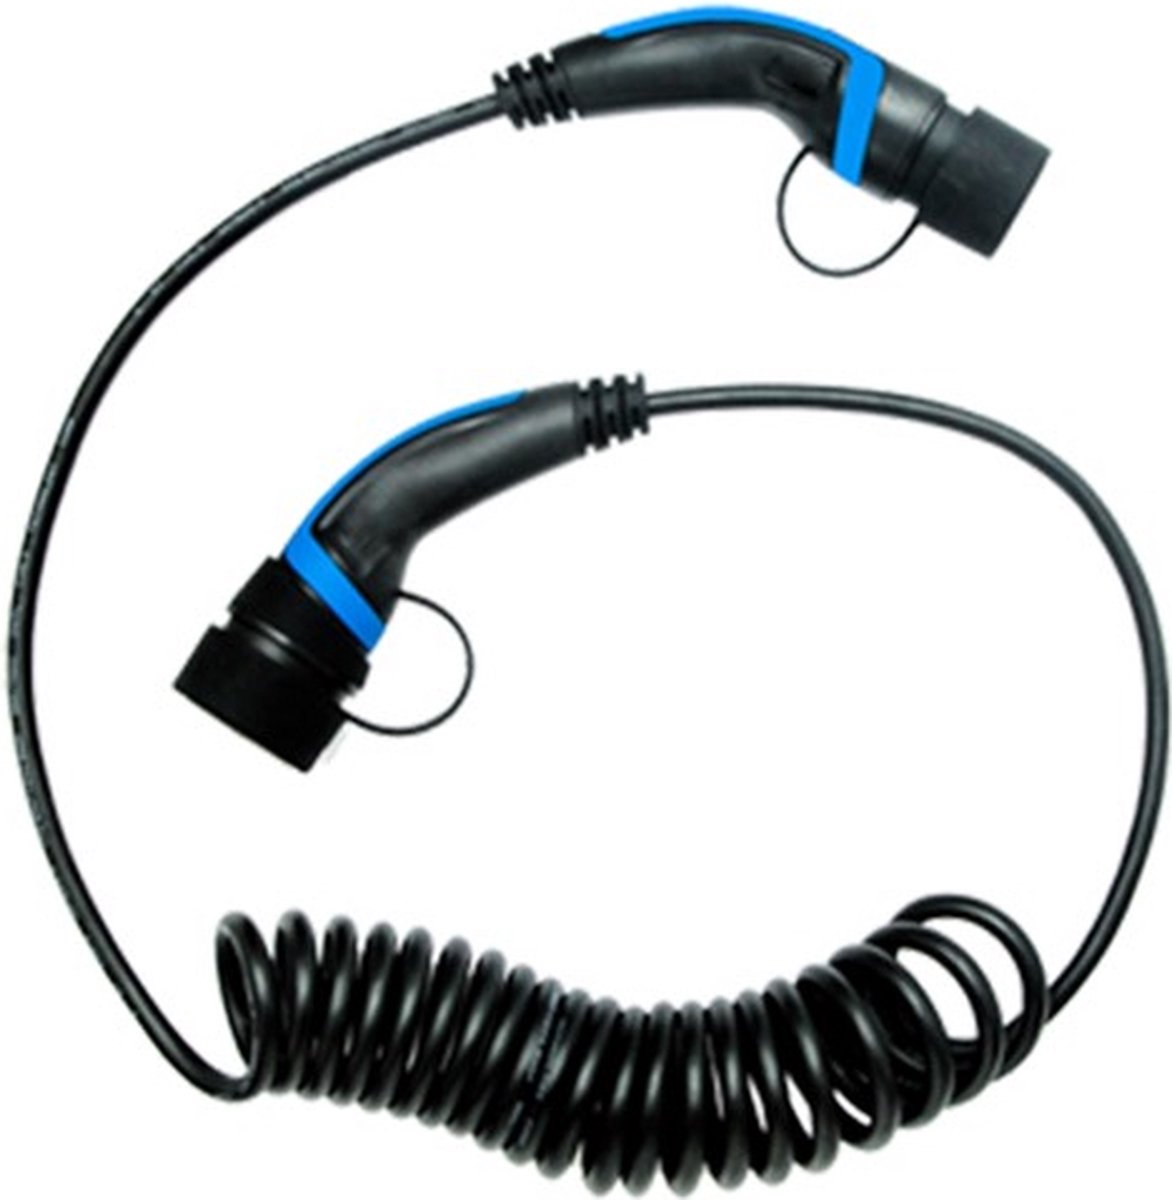 Chargement de câble de type 2 à la forme en spirale de type 2 pour